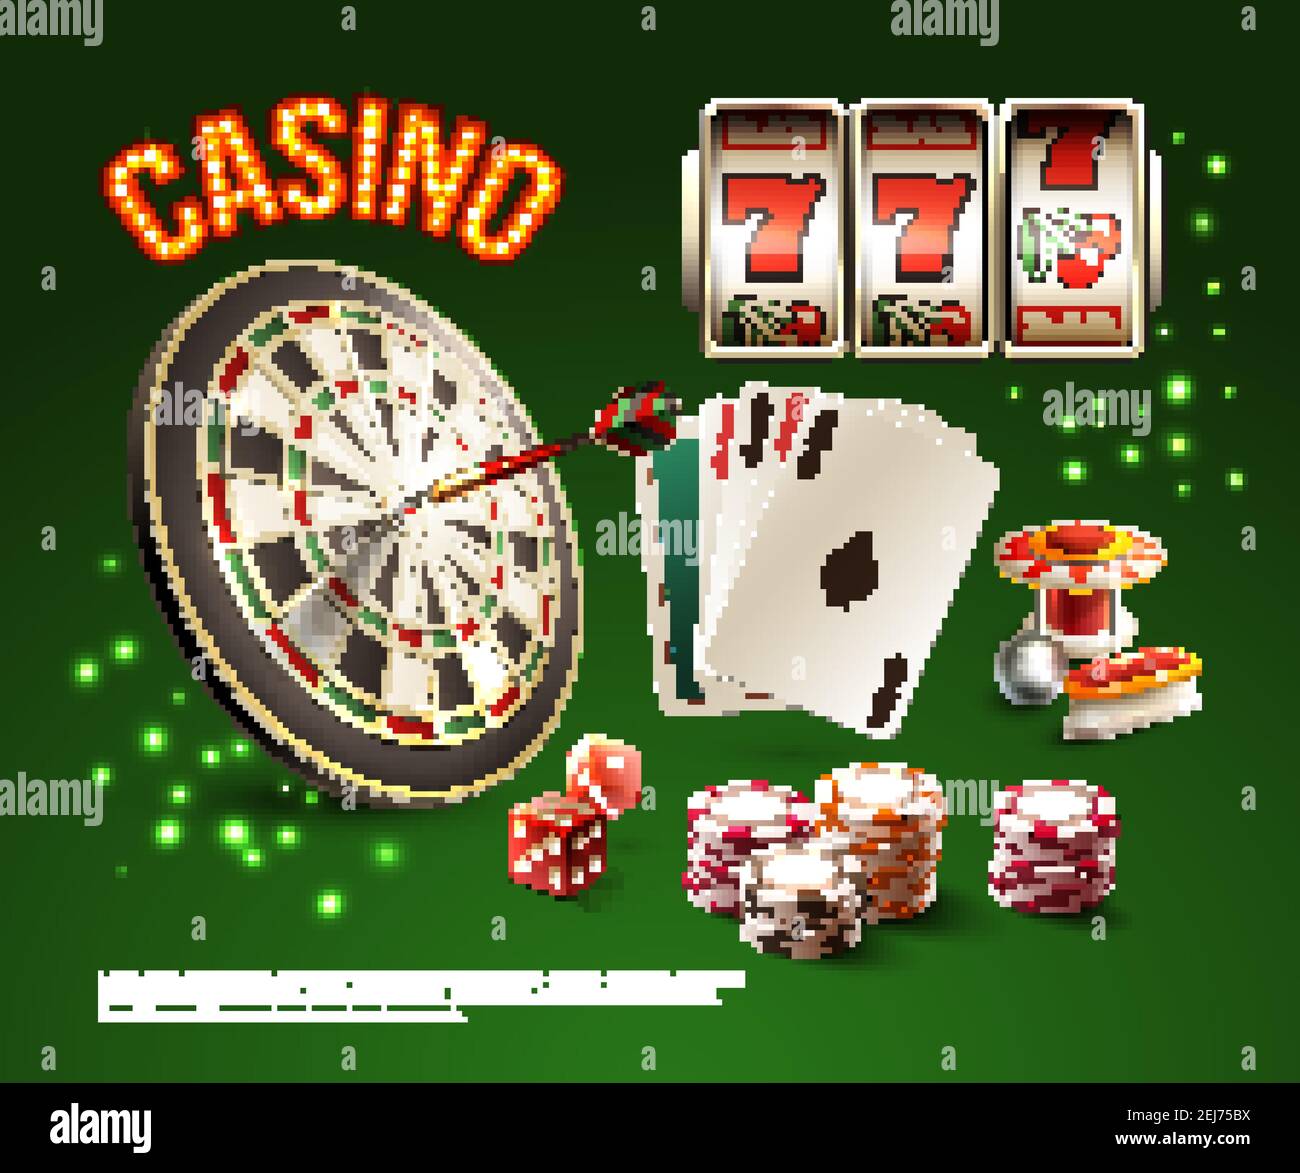 Shopping Basket Casino Roulette 3d Rendering Stock Illustration 2006623472